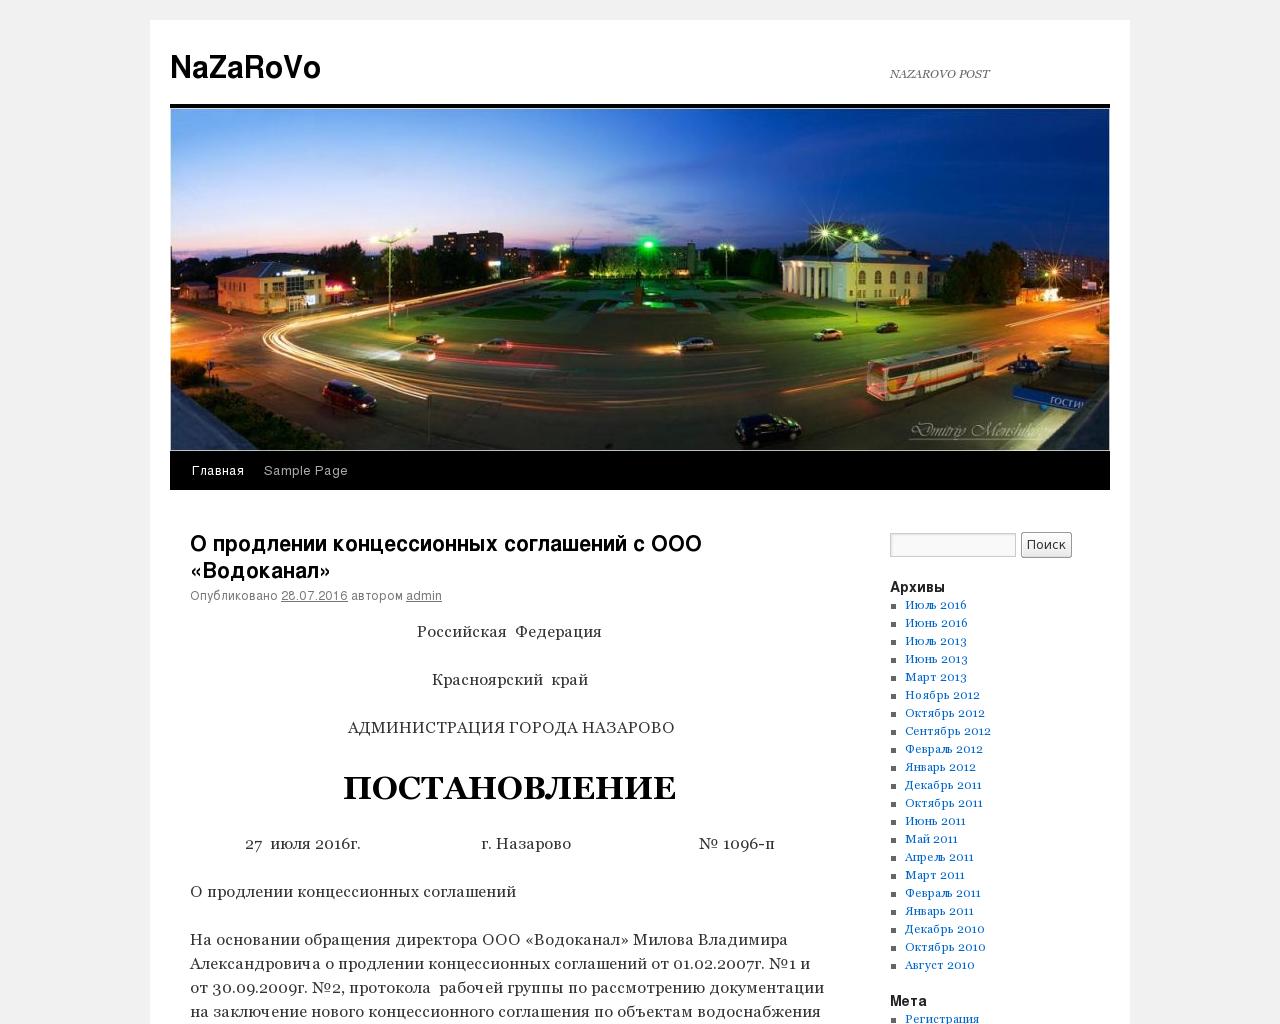 Изображение сайта nzrv.ru в разрешении 1280x1024